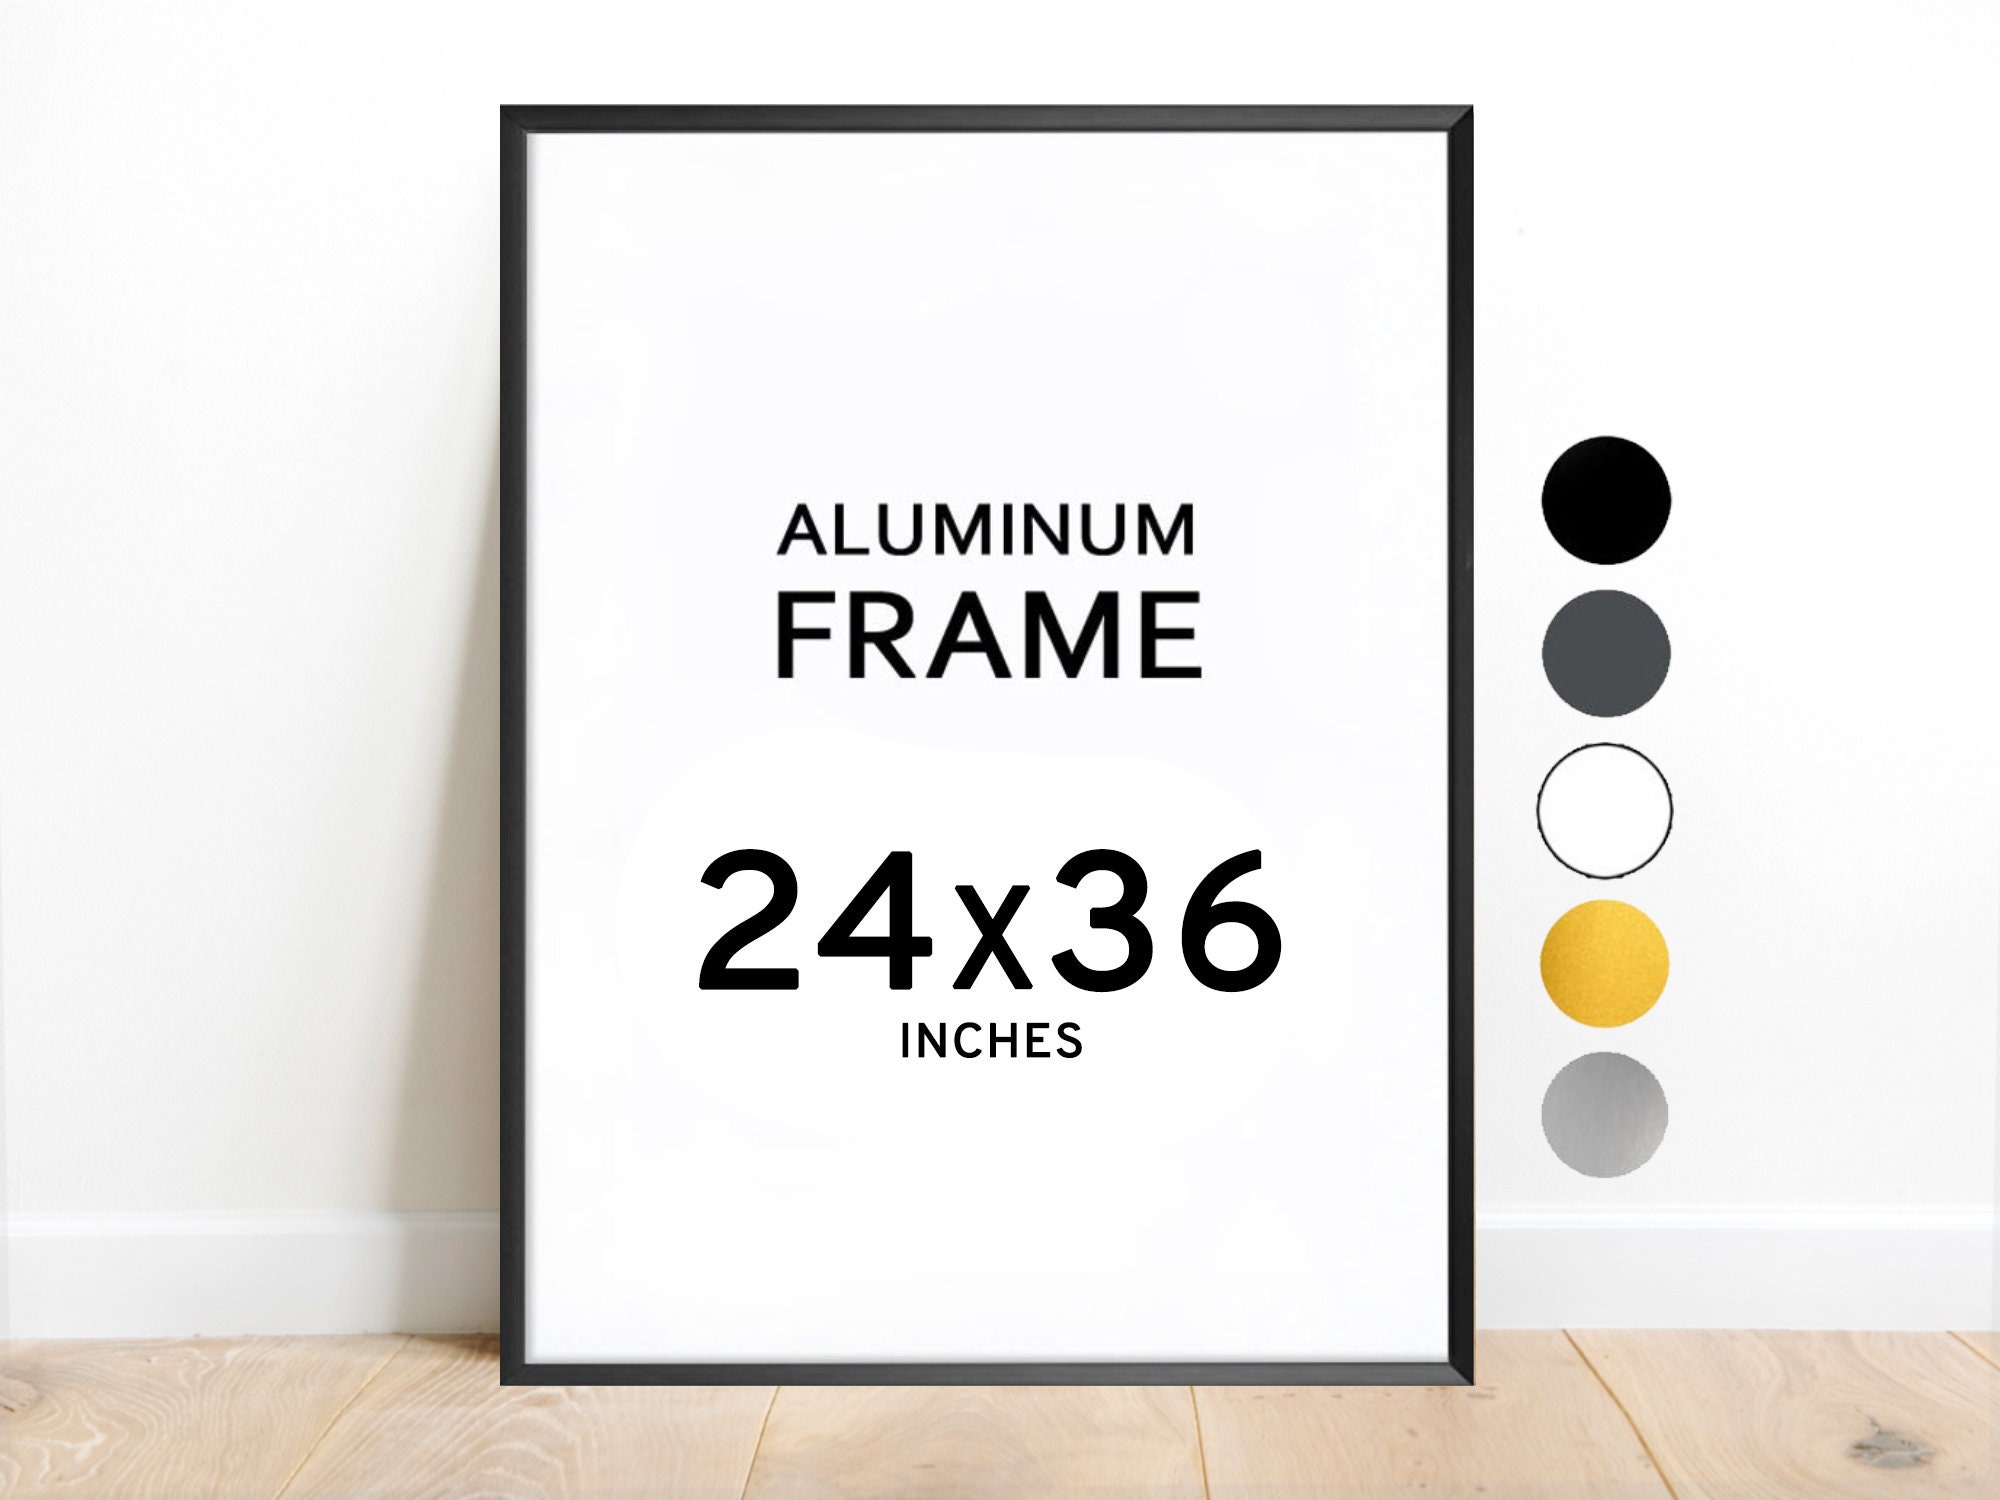 Evakuering tildeling licens 24x36 Aluminum Frame / Colors: Black White Graphite Silver - Etsy